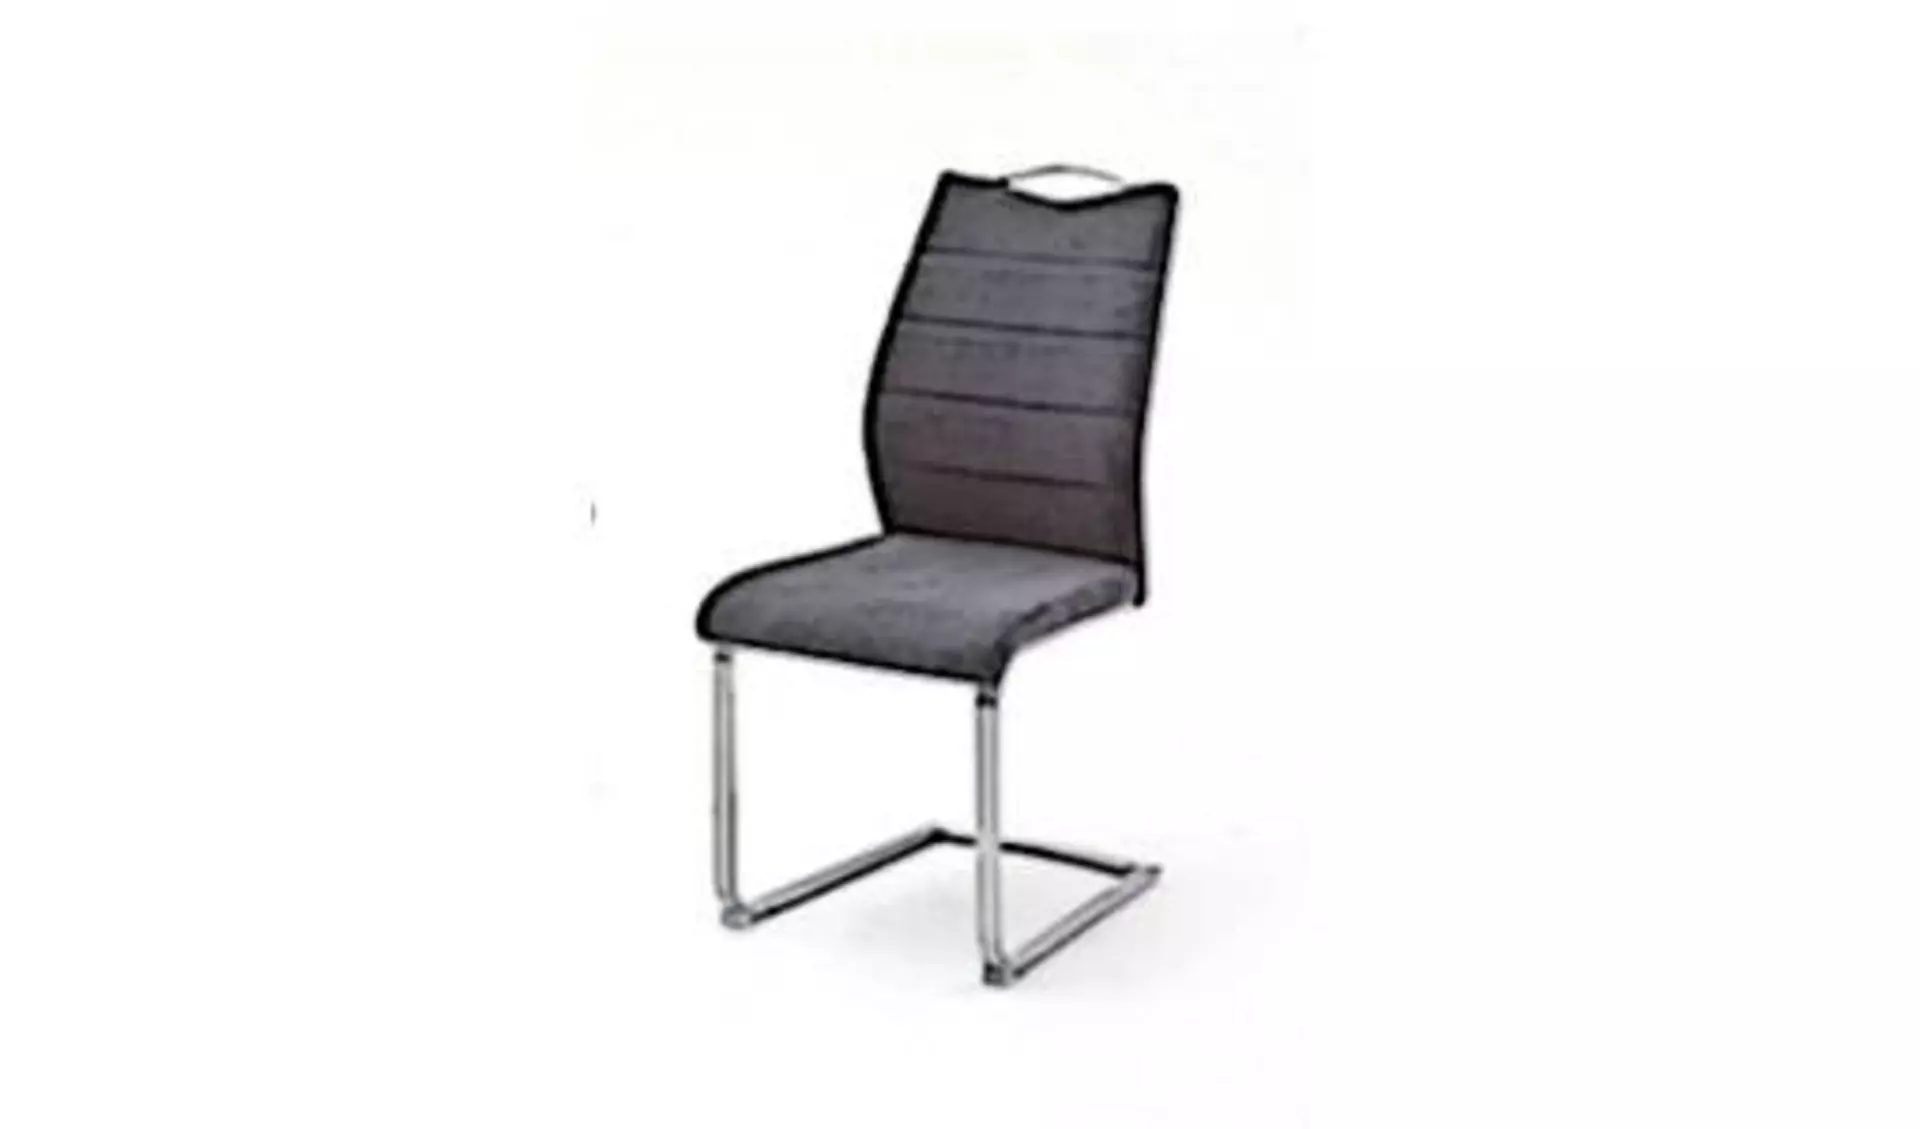 Esszimmerstuhl mit schwarzem Polster im Bereich der Sitzfläche und Rückenlehne und U-förmigen Metallfuß für stabilen Stand. Der abgebildete Esszimmerstuhl steht als Synonym für alle Stühle dieser Kategorie.